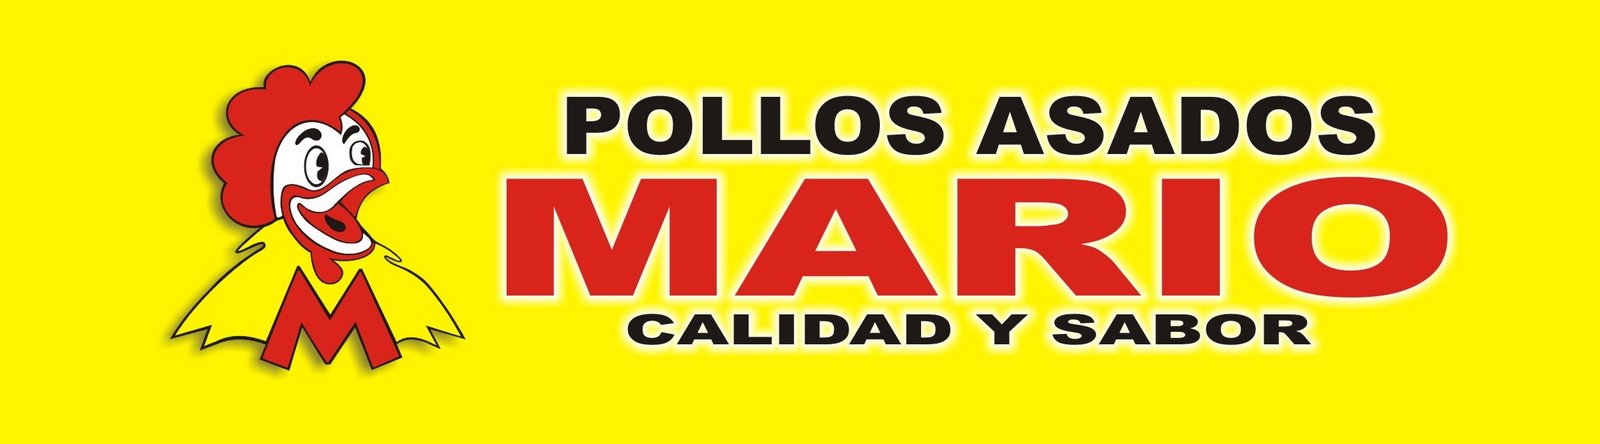 POLLOS ASADOS MARIO